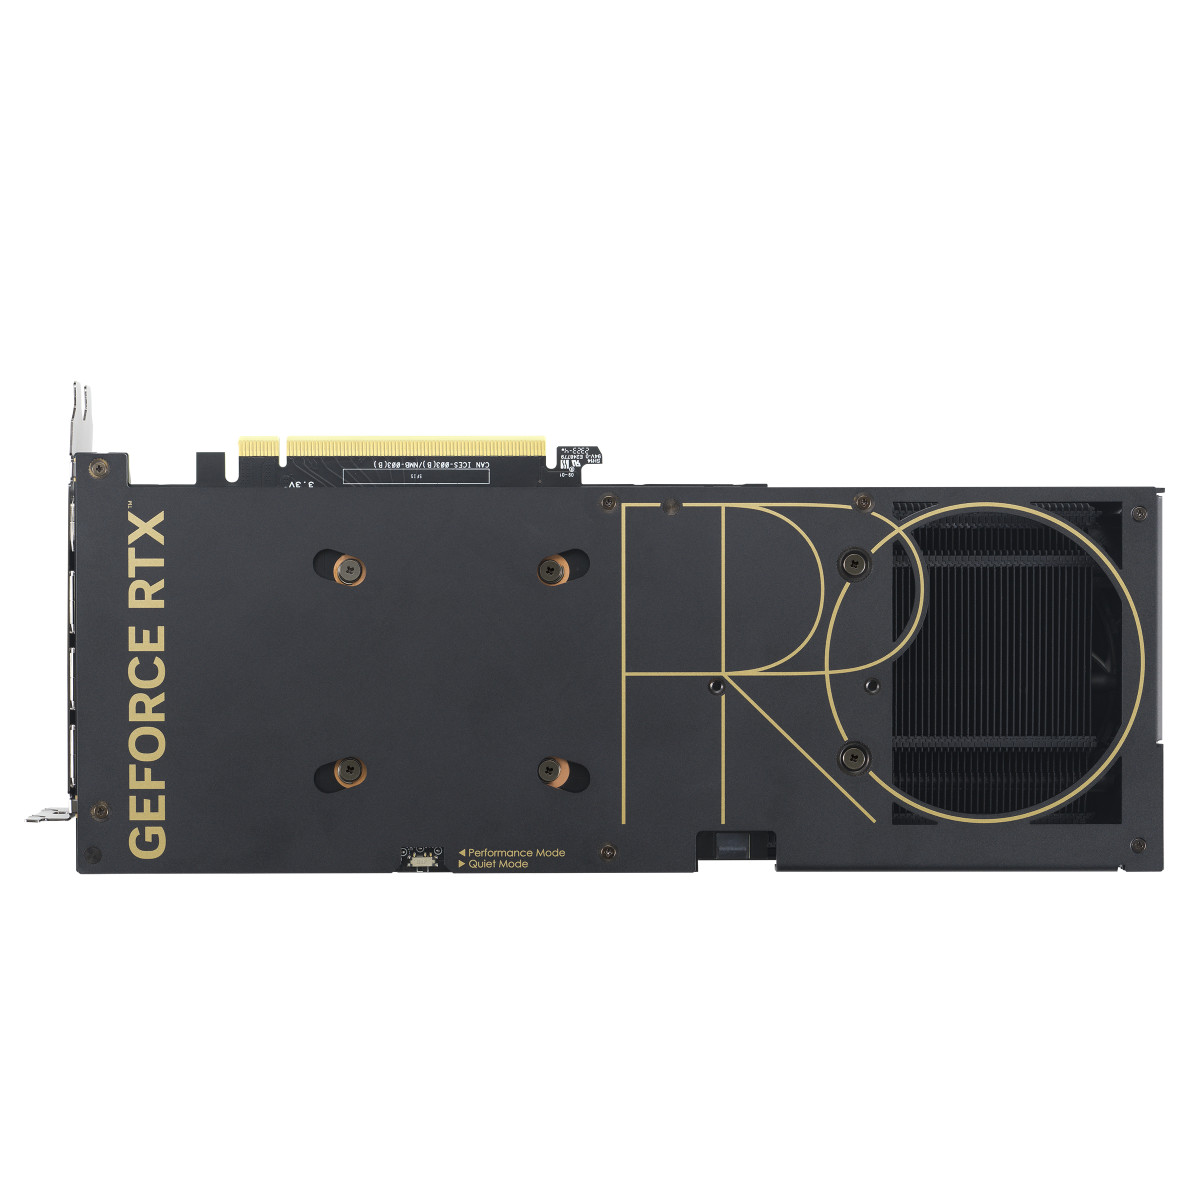 GPU NV PROART-RTX4060-O8G Fan